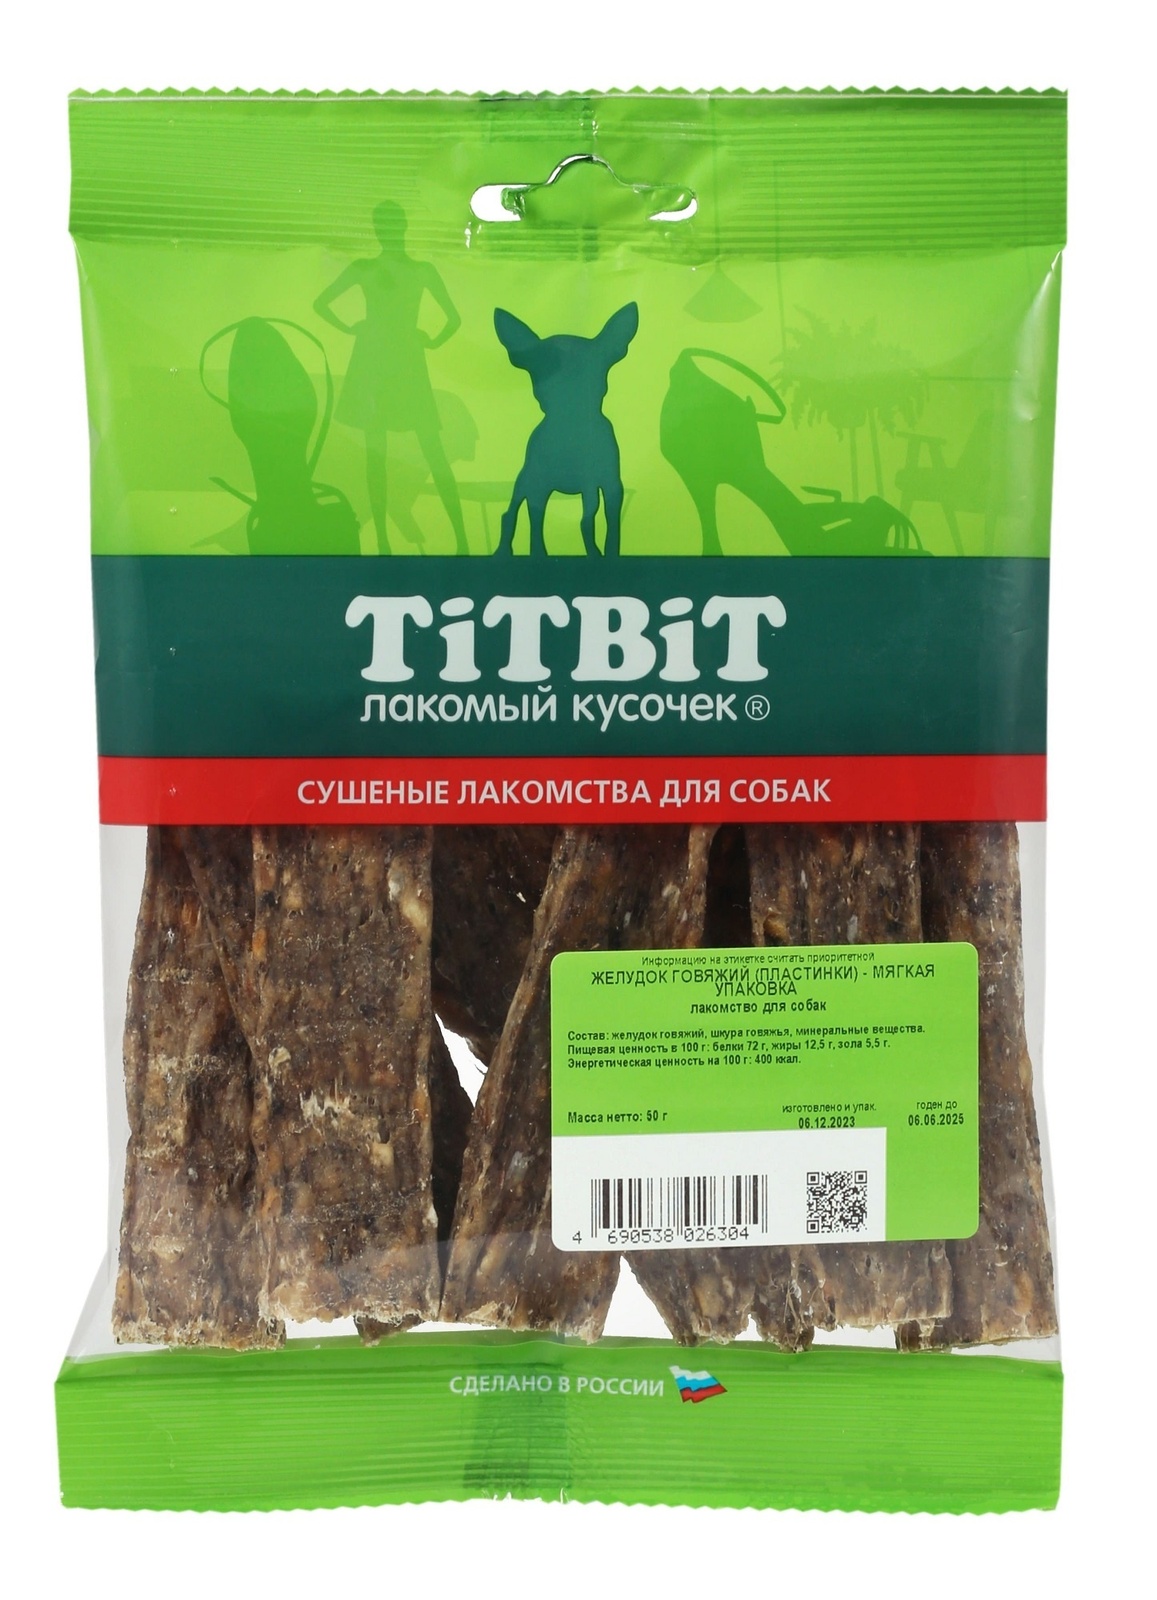 TiTBiT TiTBiT желудок говяжий (пластинки) - мягкая упаковка (50 г) titbit лакомство желудок говяжий xxl в мягкой упаковке 120 г